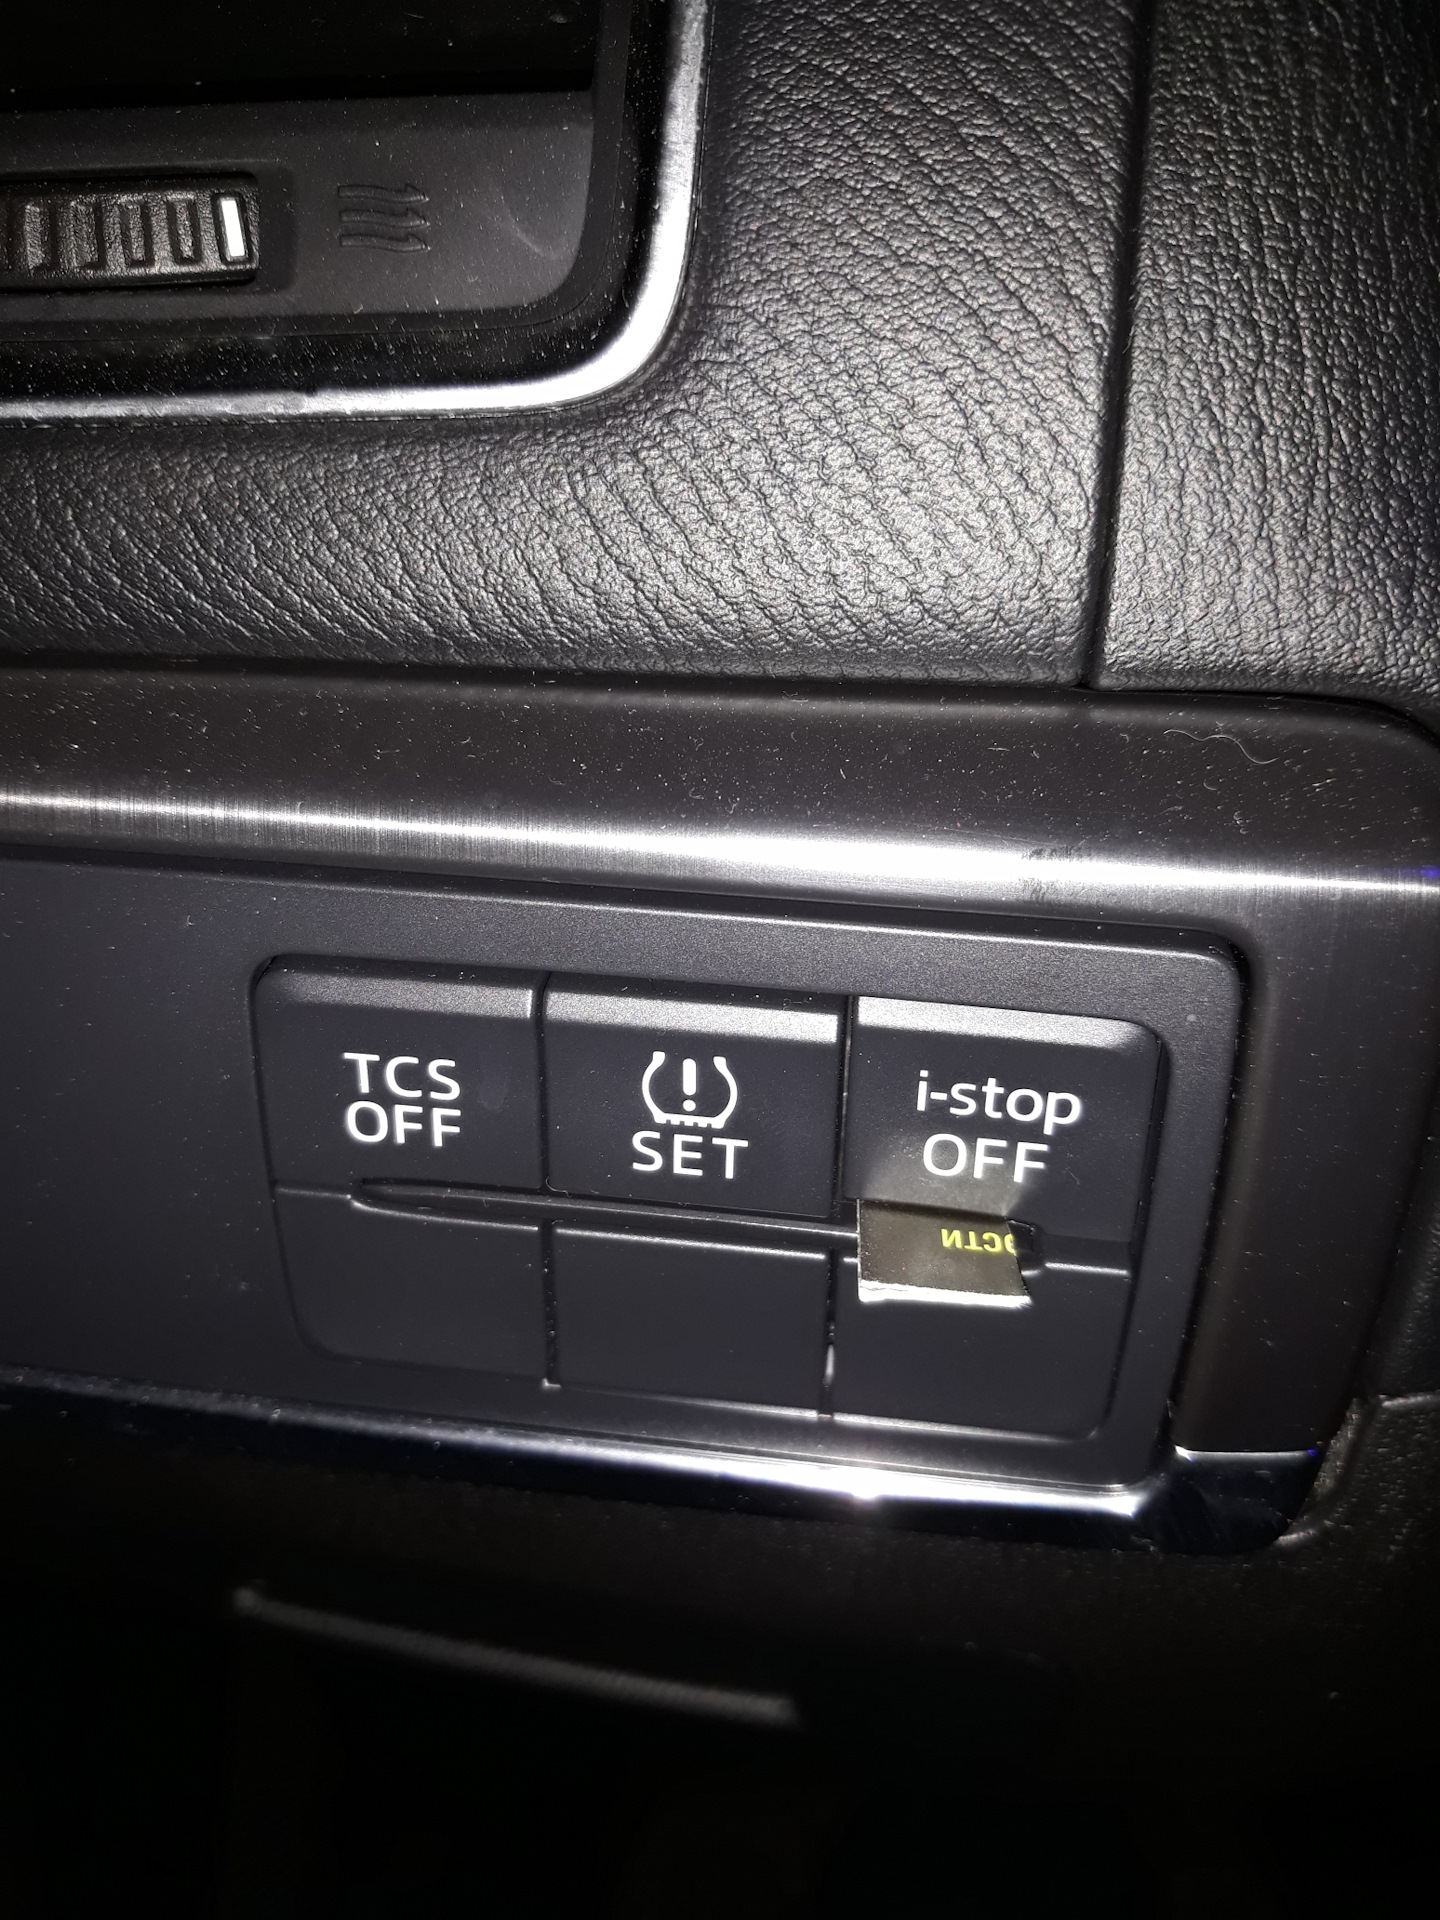 Мазда сх5 старт стоп. Кнопка i-stop Mazda CX-5. Мазда СХ-5 I-stop кнопка. Мазда СХ 5 кнопка TCS. Mazda CX 5 кнопка Istop.